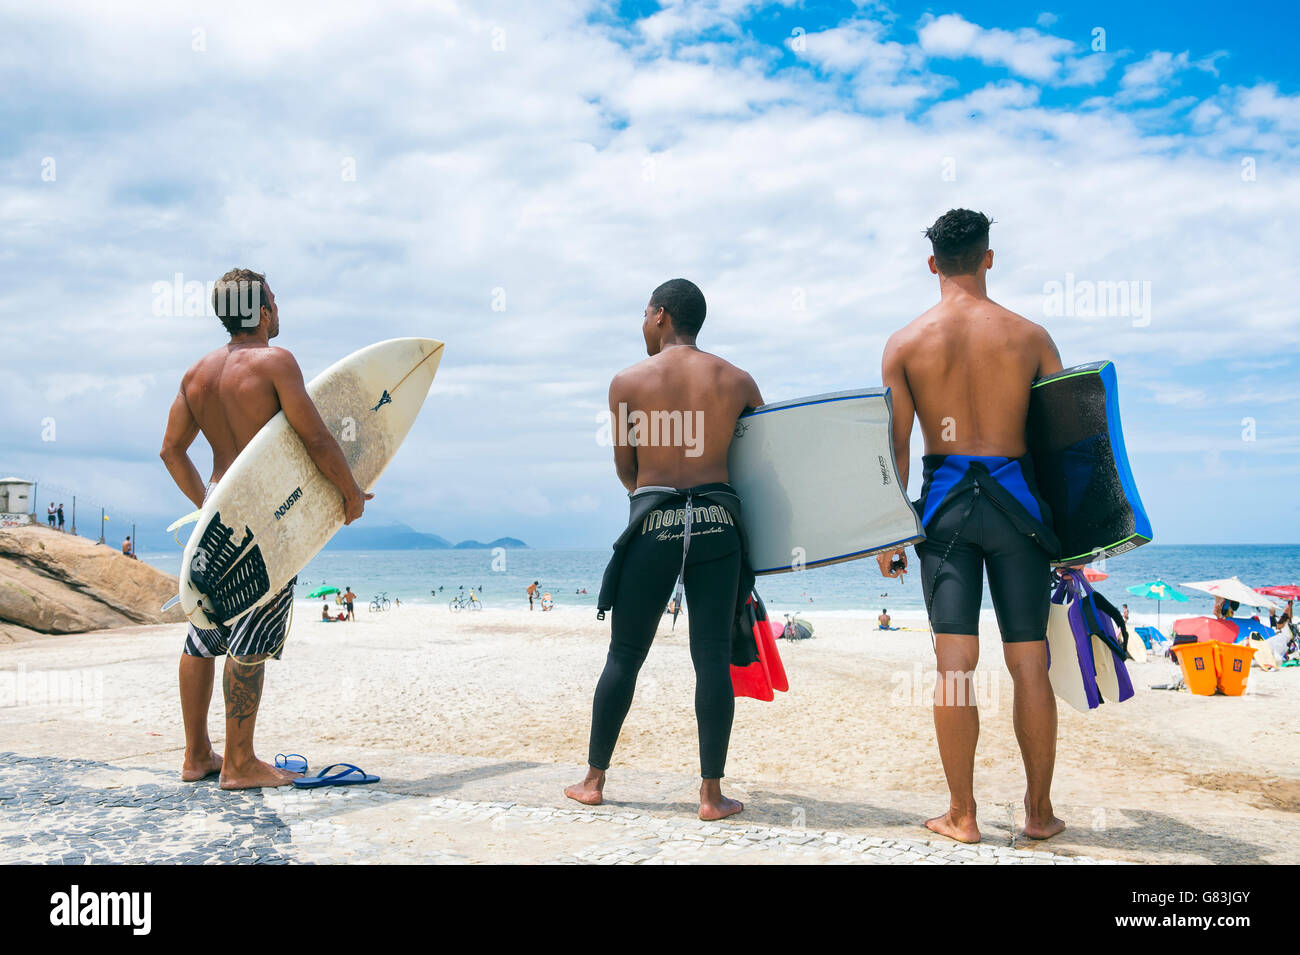 RIO DE JANEIRO - APRIL 3, 2016: Group of young Brazilian carioca surfers stand on Praia do Diabo beach at Arpoador, a surf spot. Stock Photo